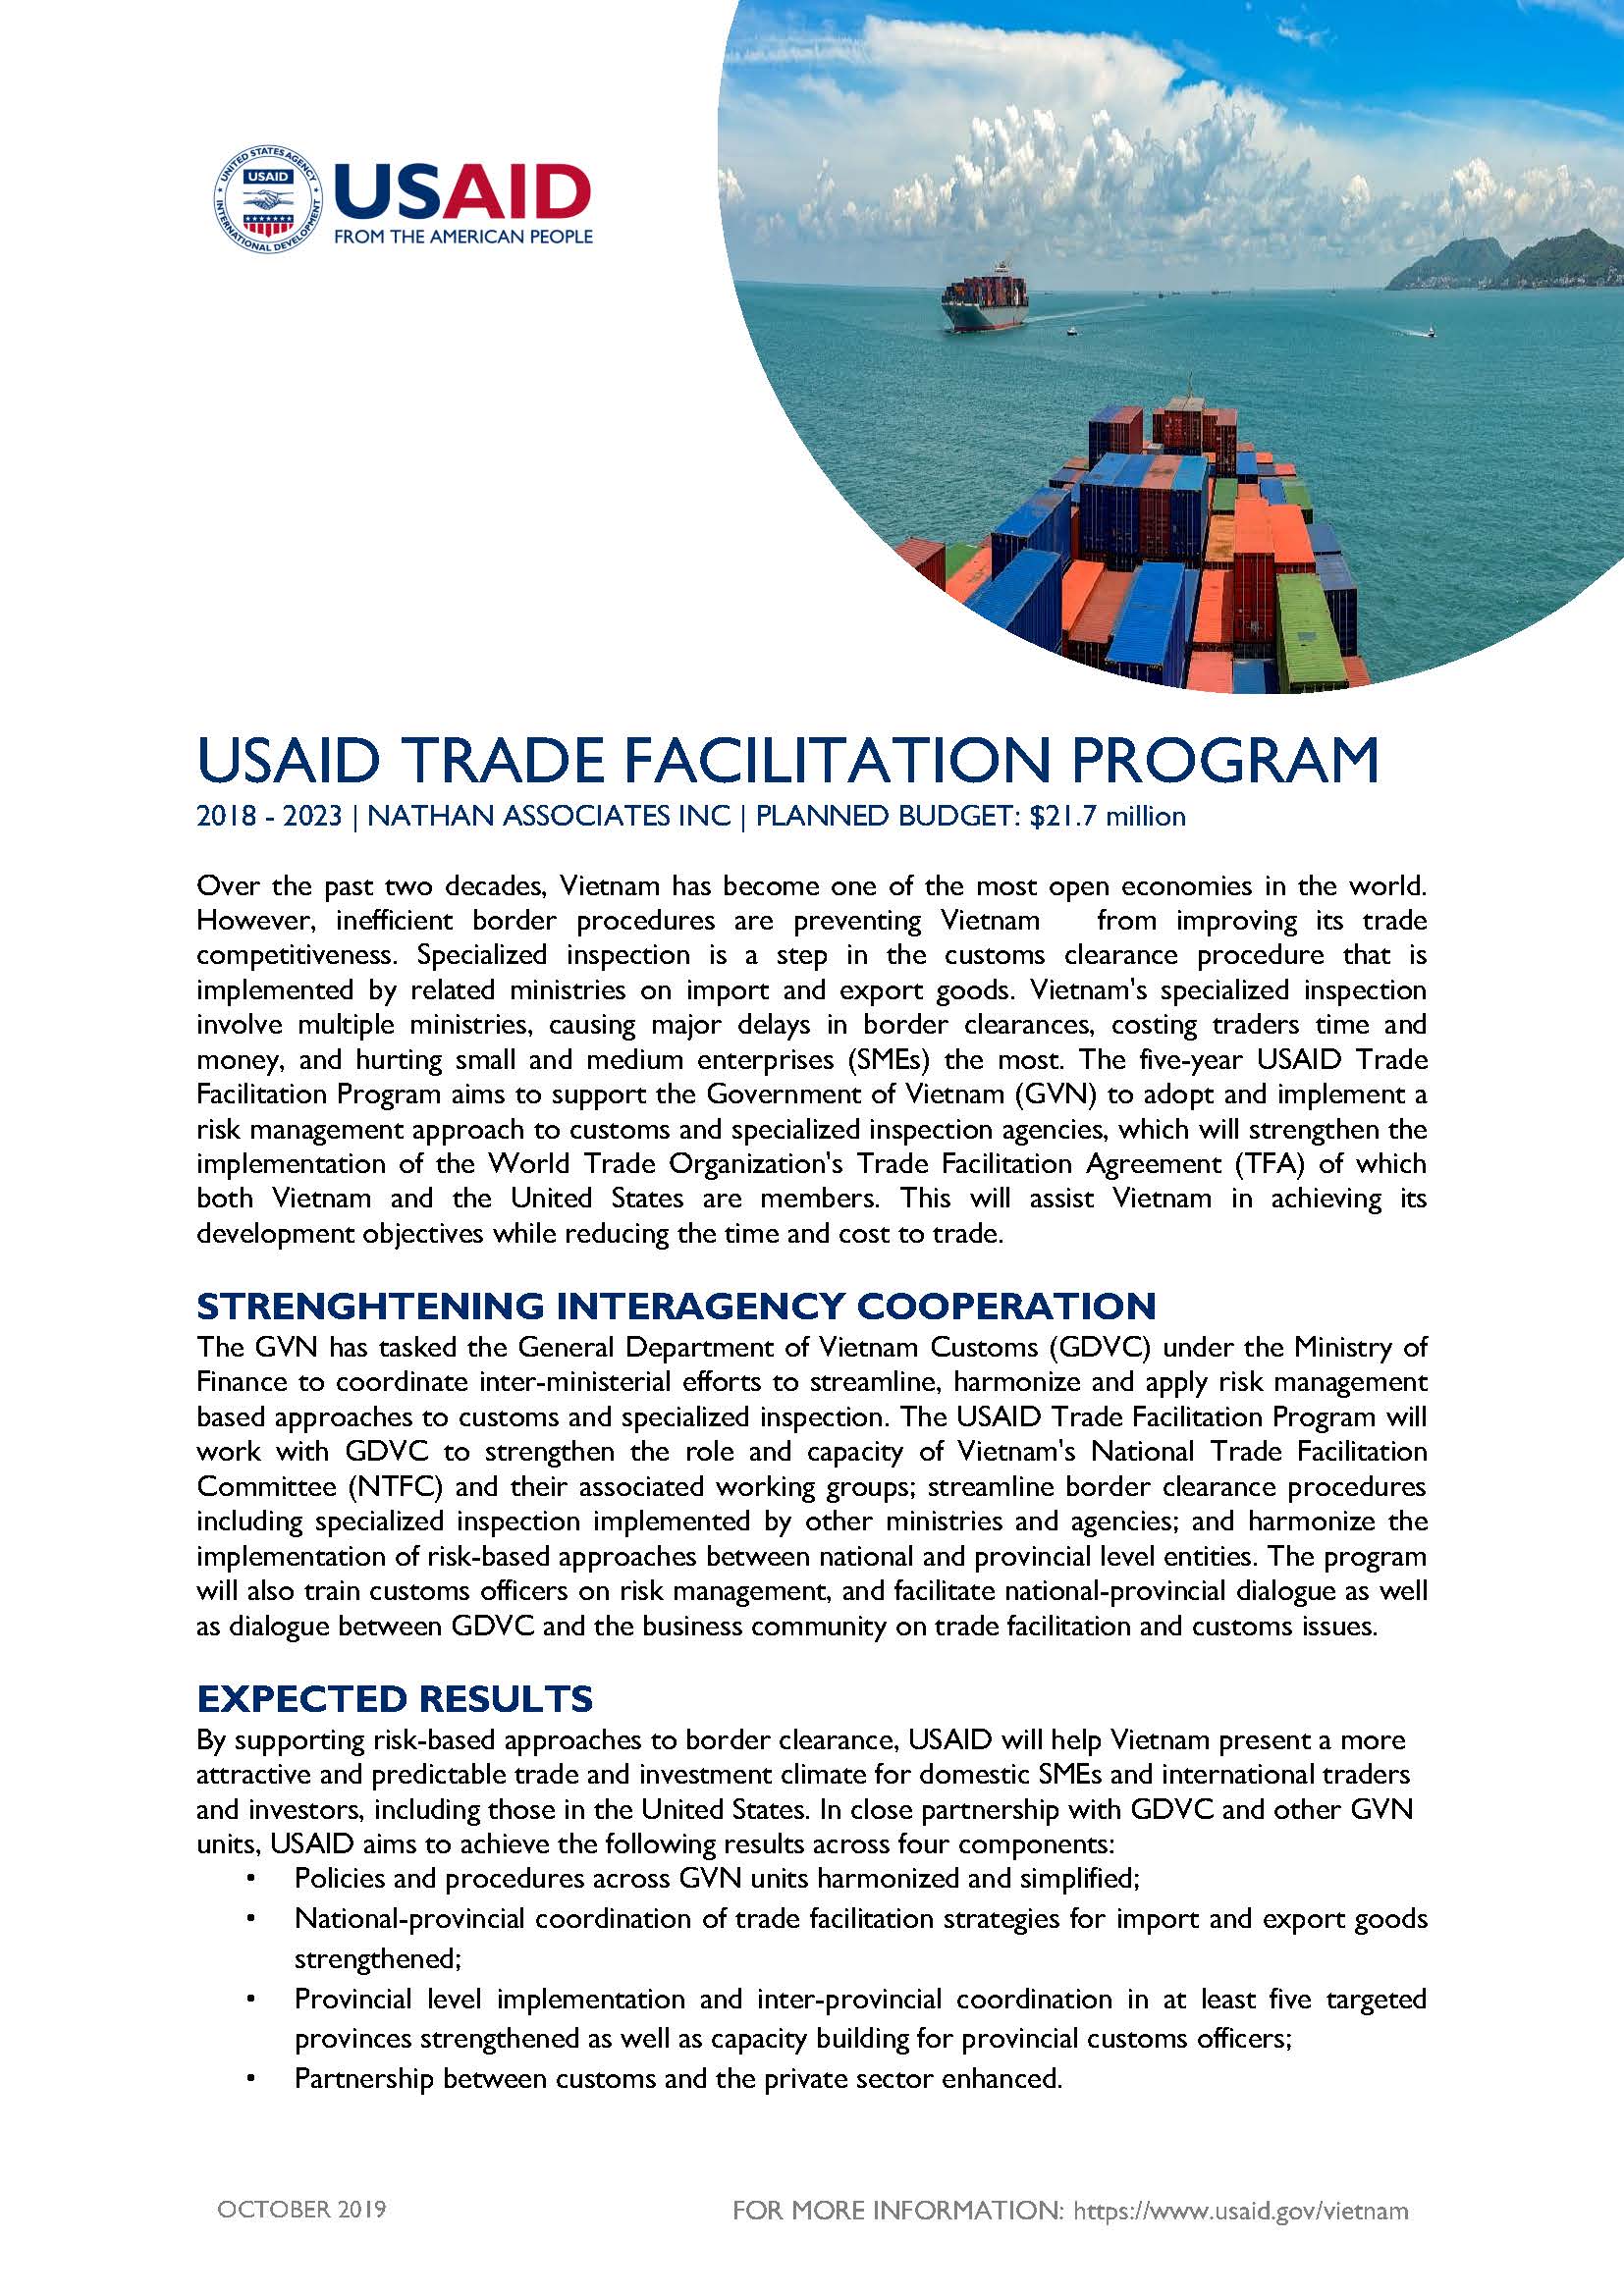 USAID Trade Facilitation Program